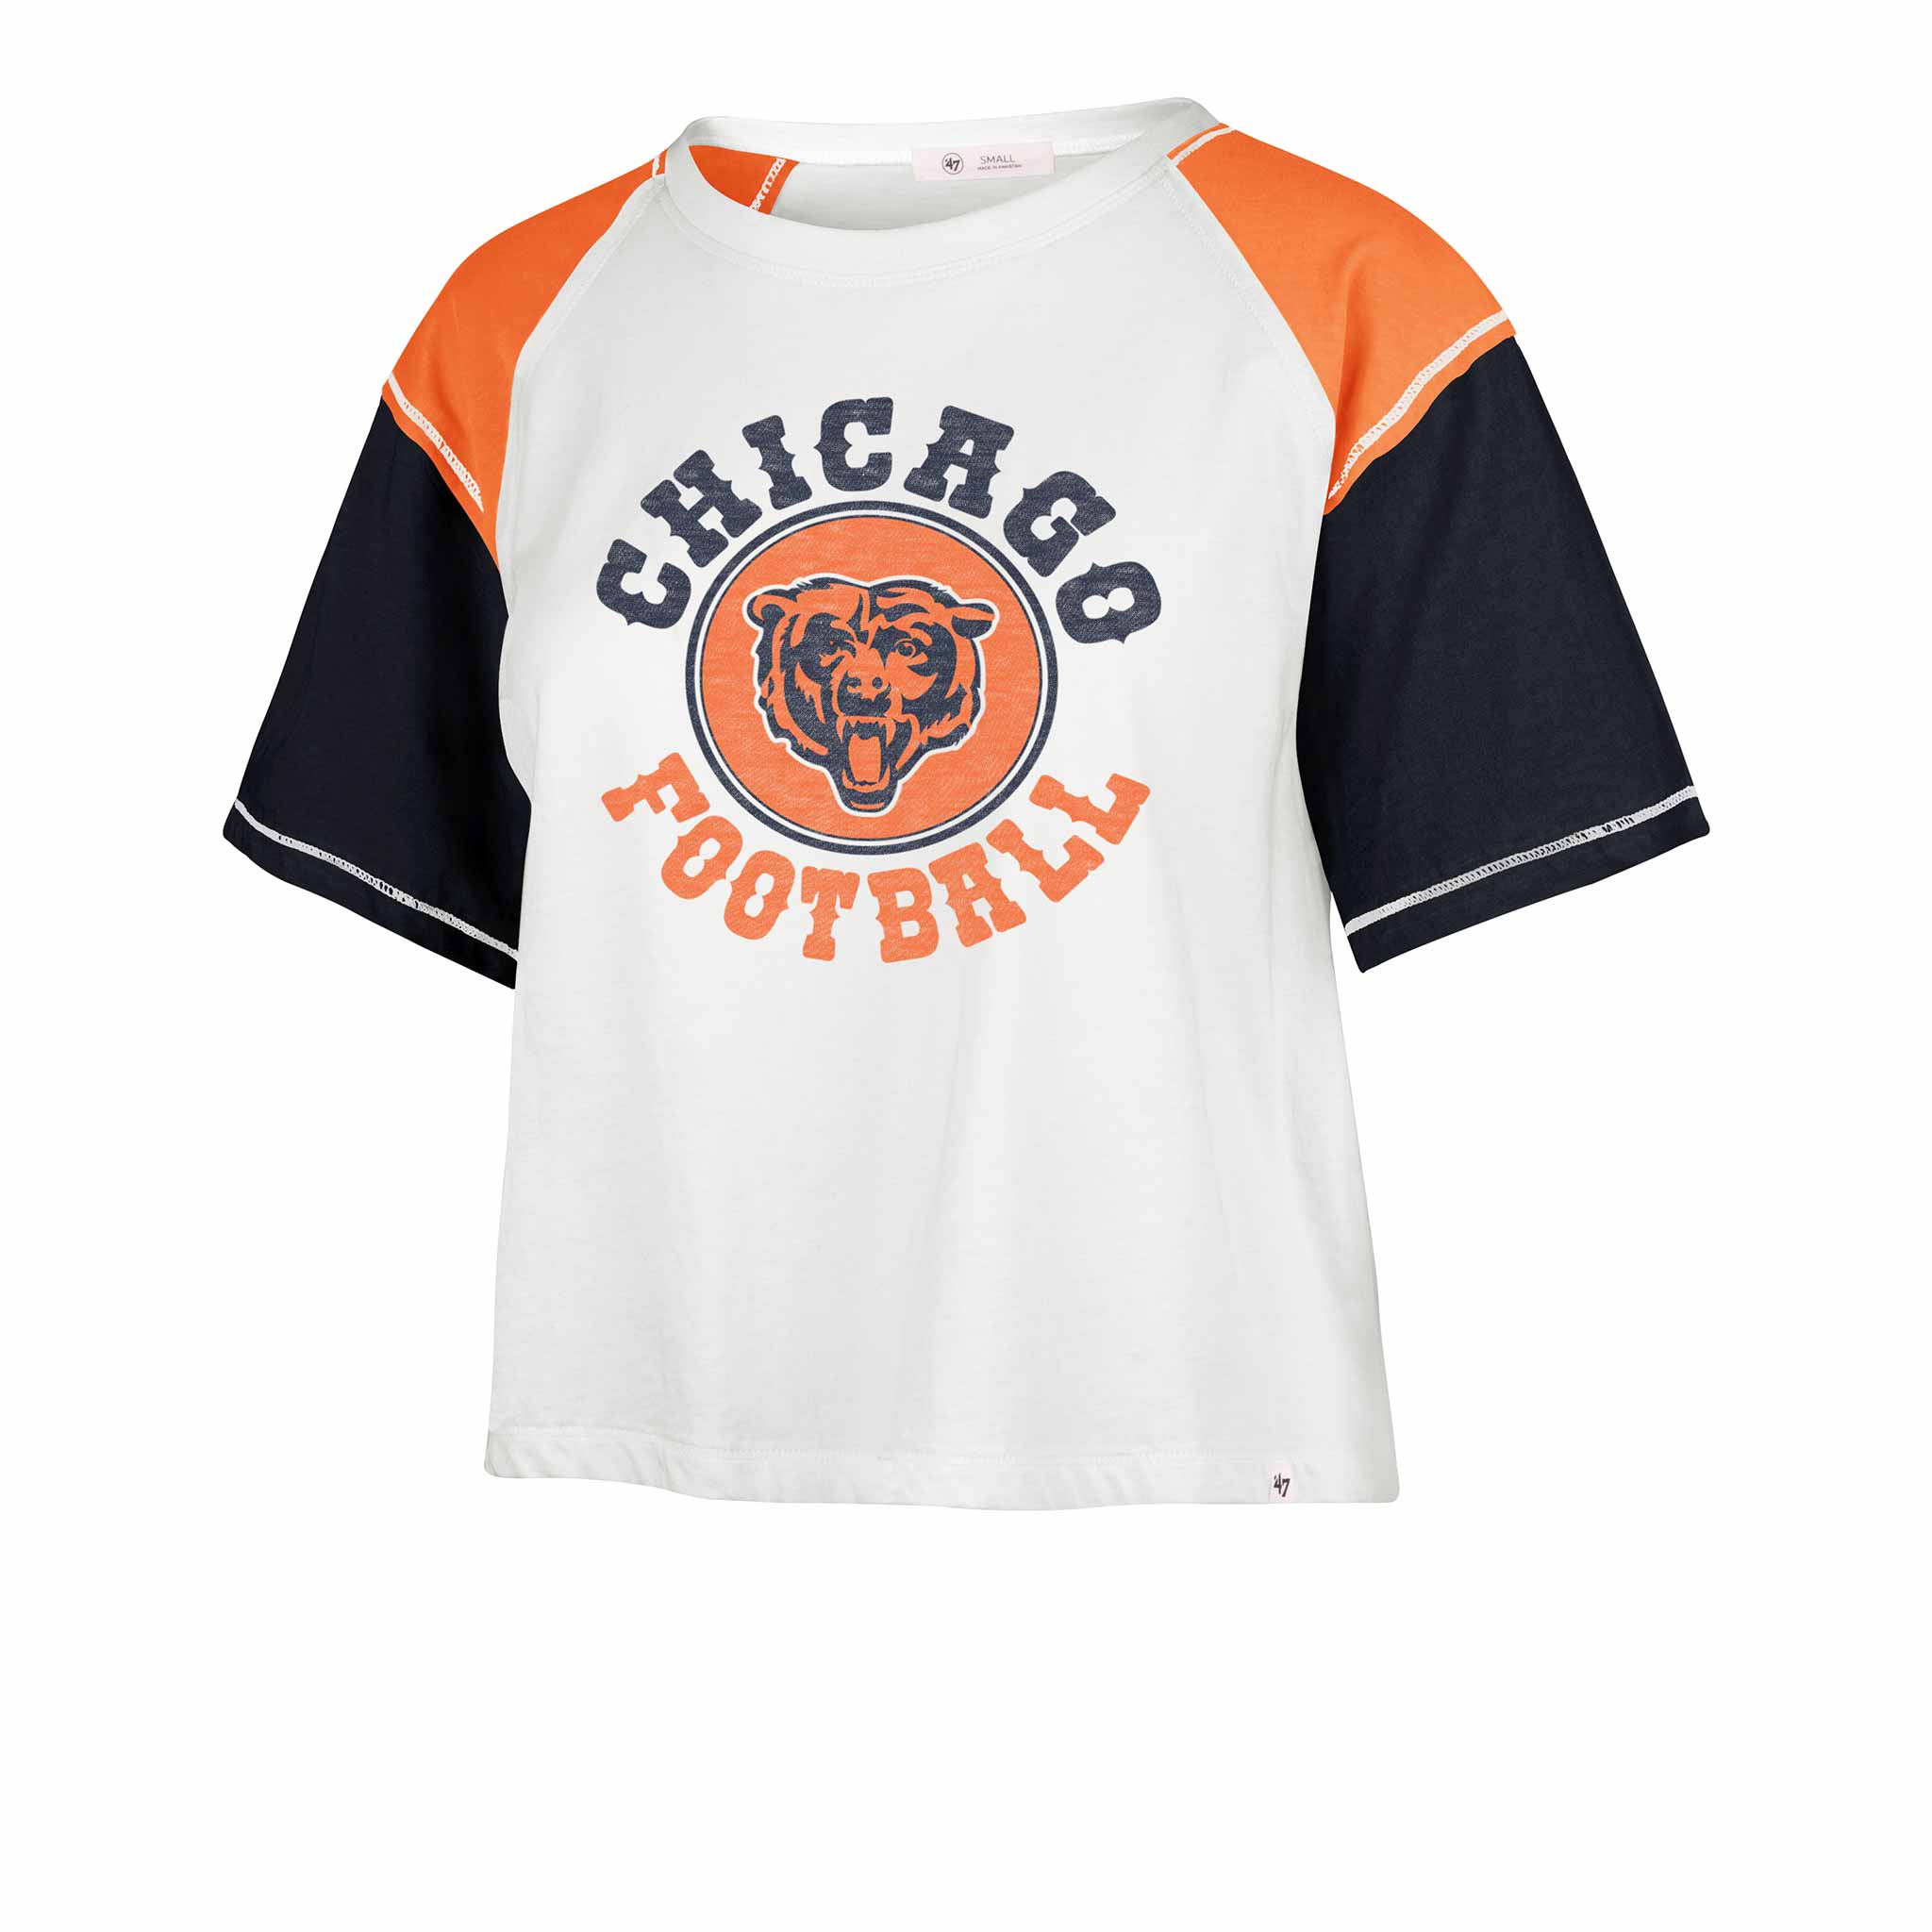 chicago bears shirt